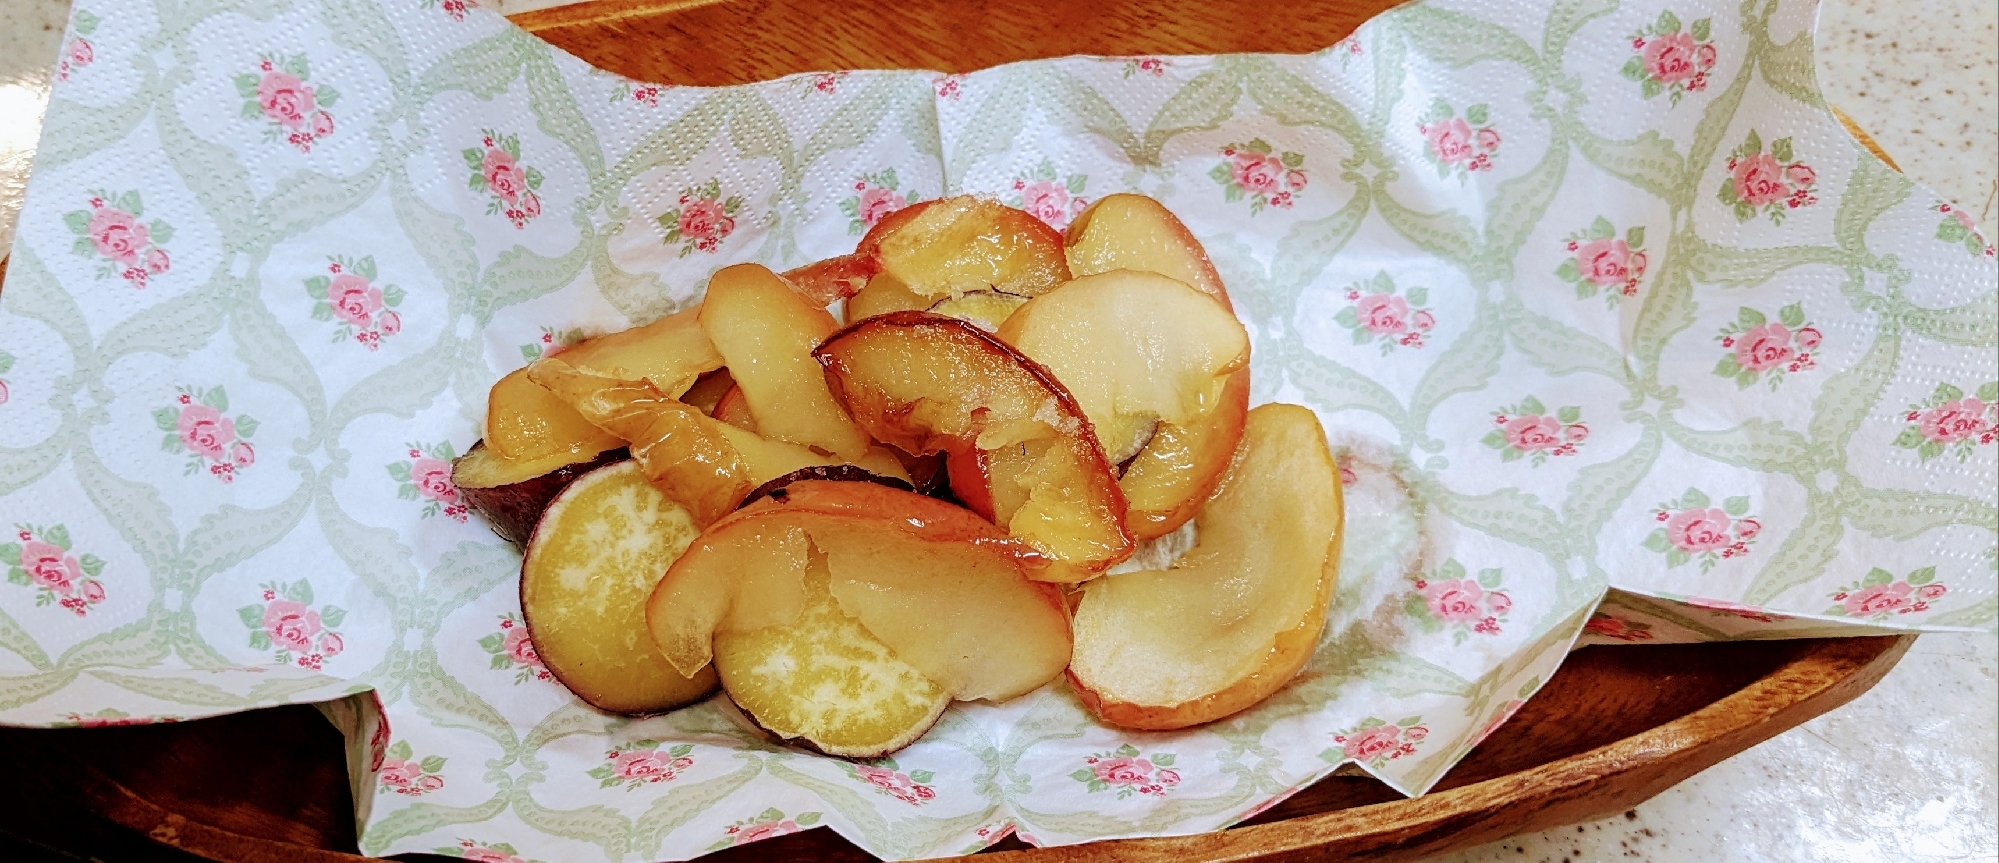 りんごとさつま芋のオ-ブン焼き(⁠^⁠^⁠)